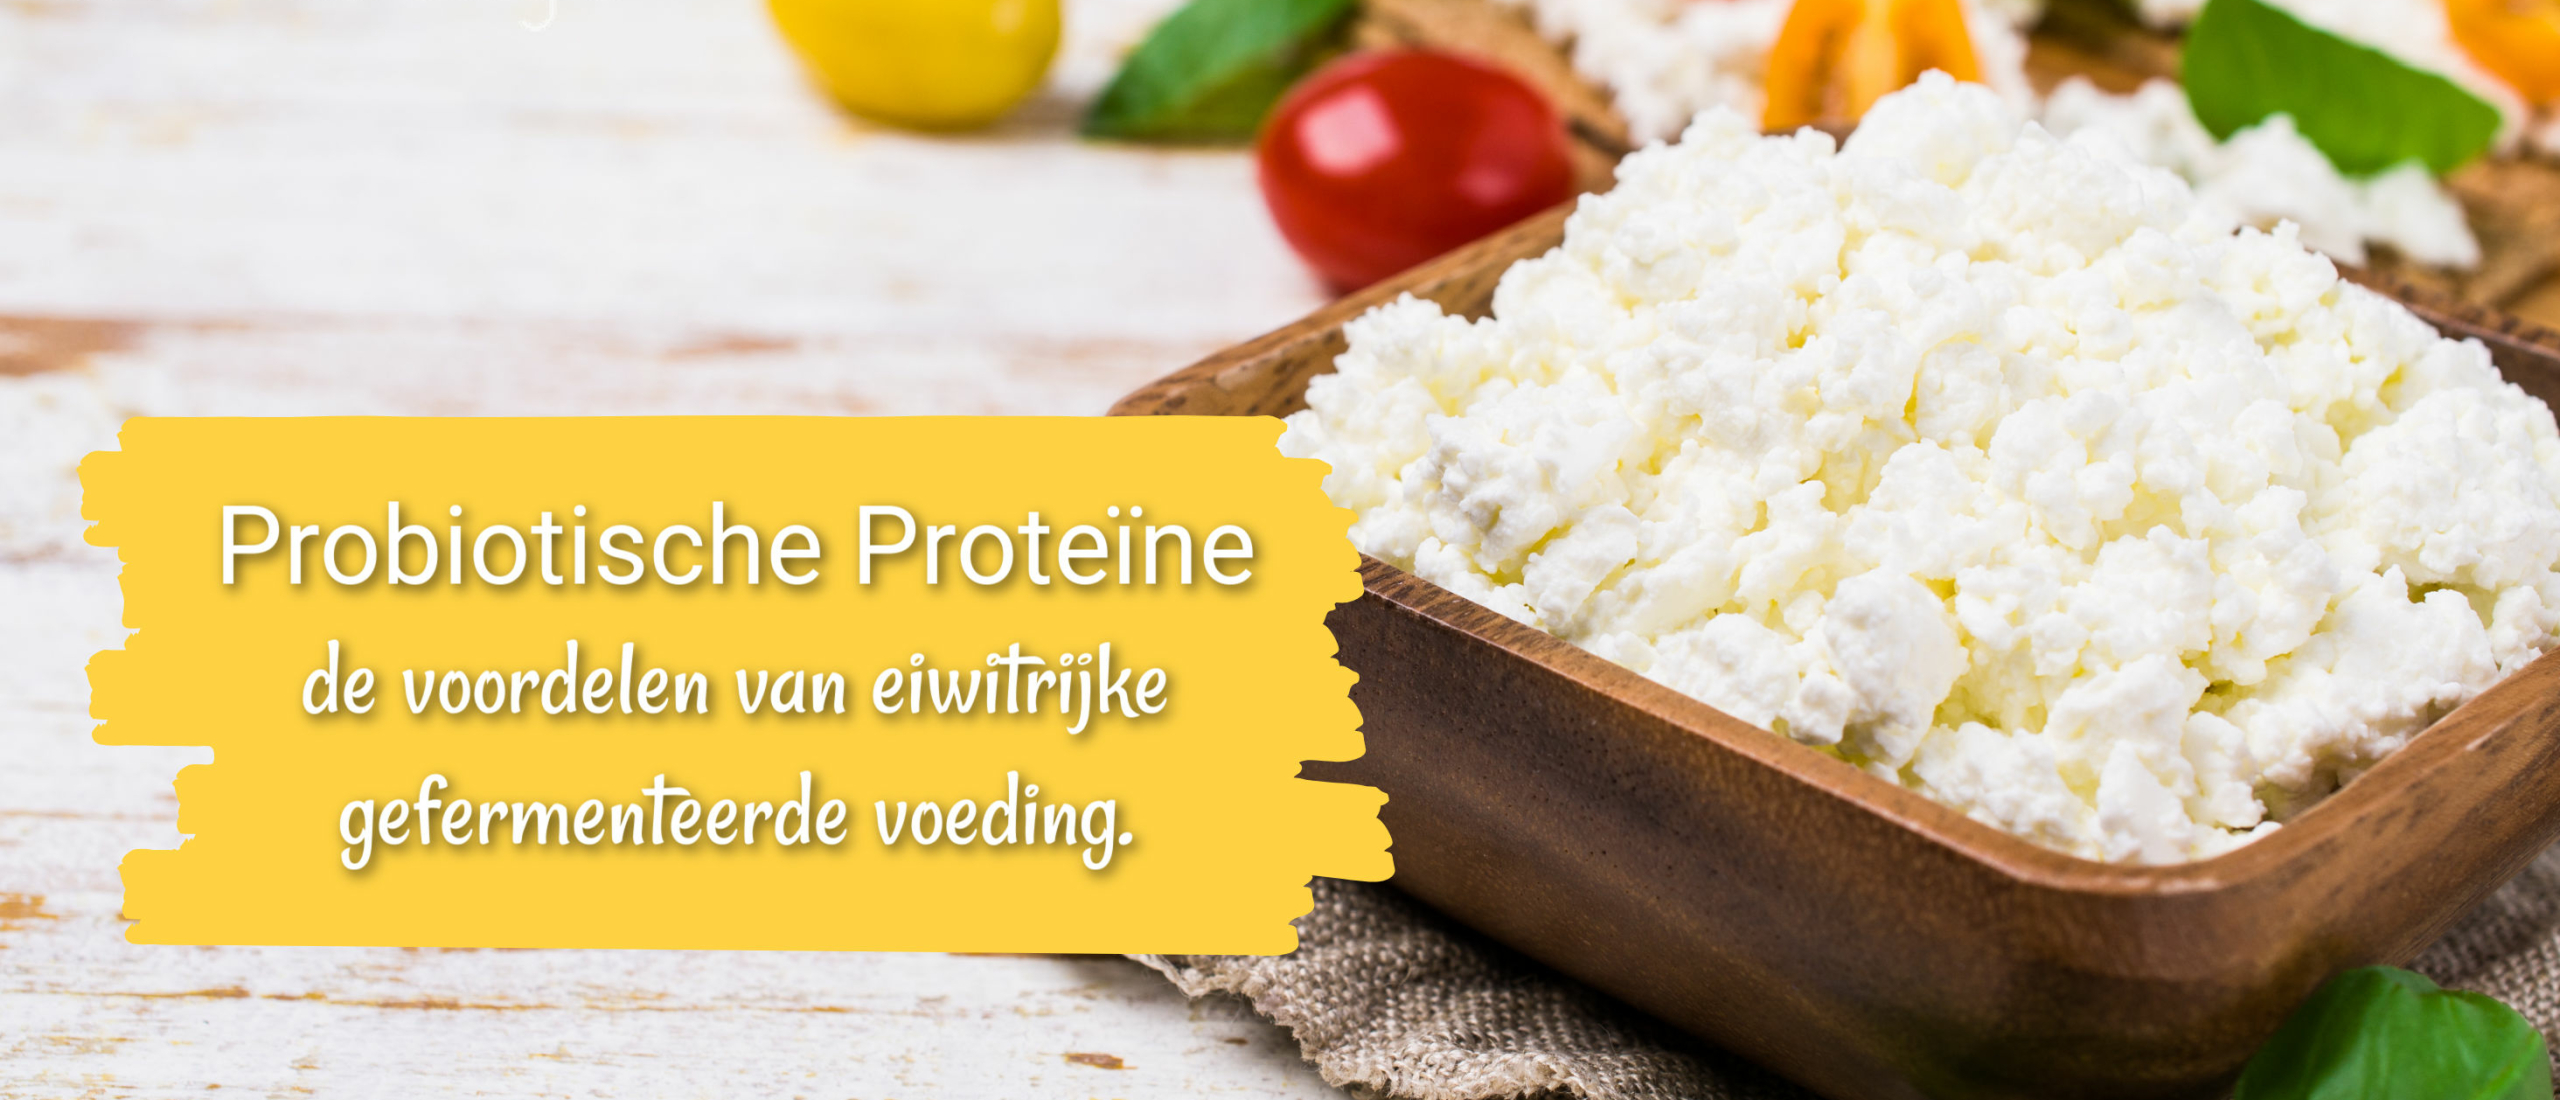 Probiotische Proteïne: de voordelen van eiwitrijke gefermenteerde voeding.